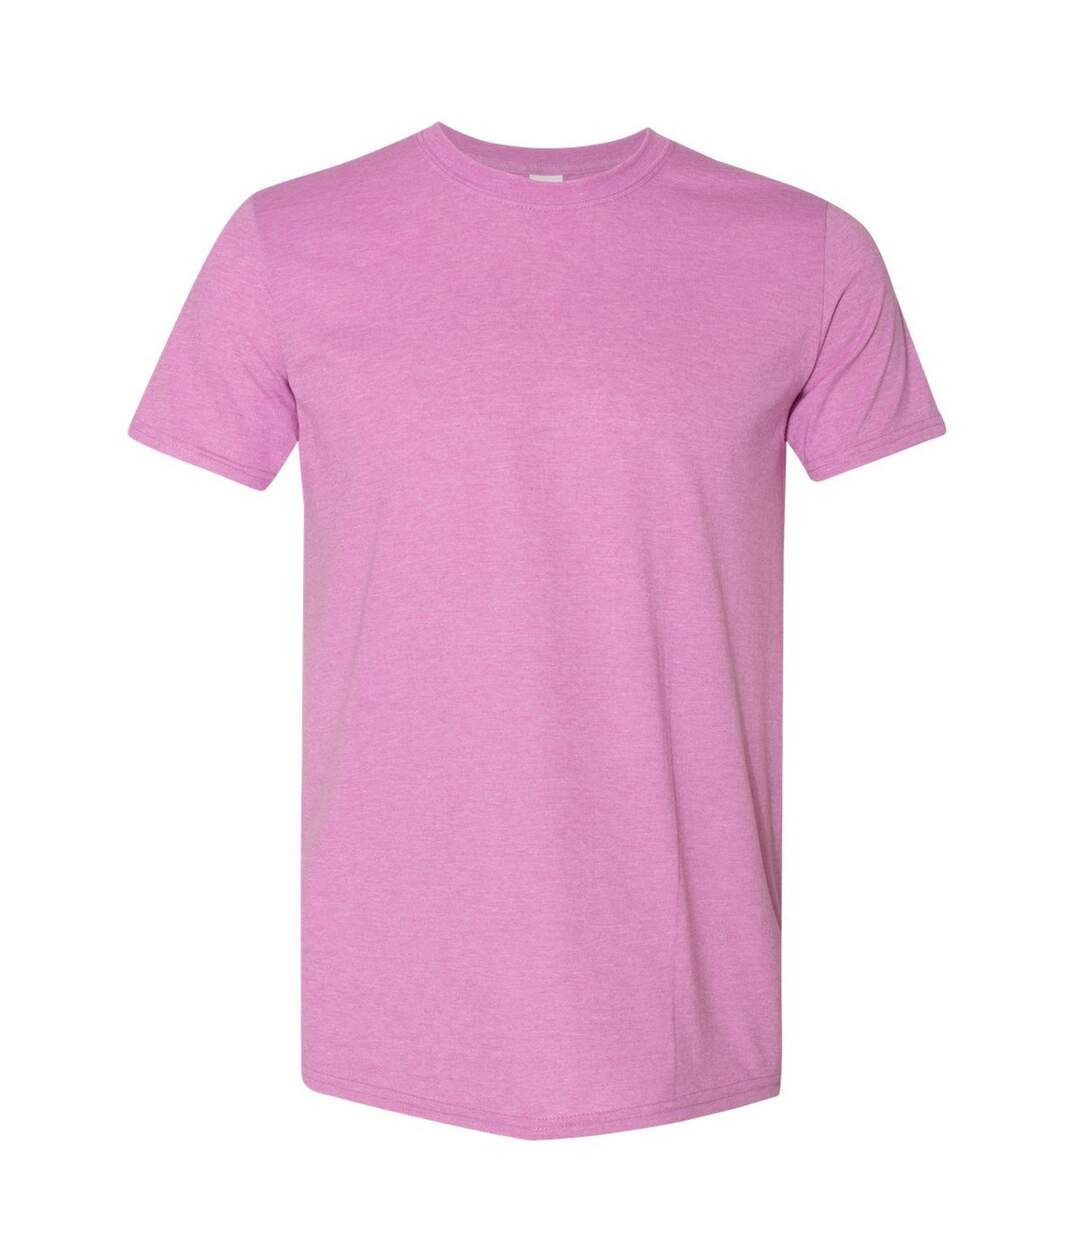 Gildan - T-shirt manches courtes - Homme (Violet clair chiné) - UTBC484